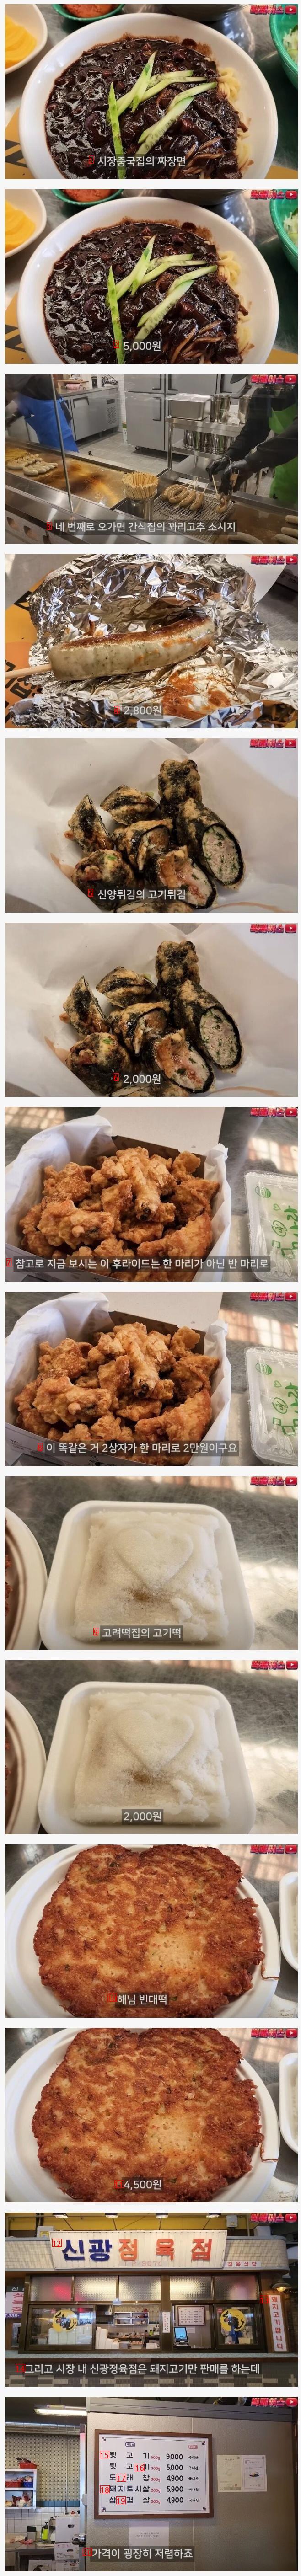 ビッグフェイスペク·ジョンウォン礼山市場の食評価